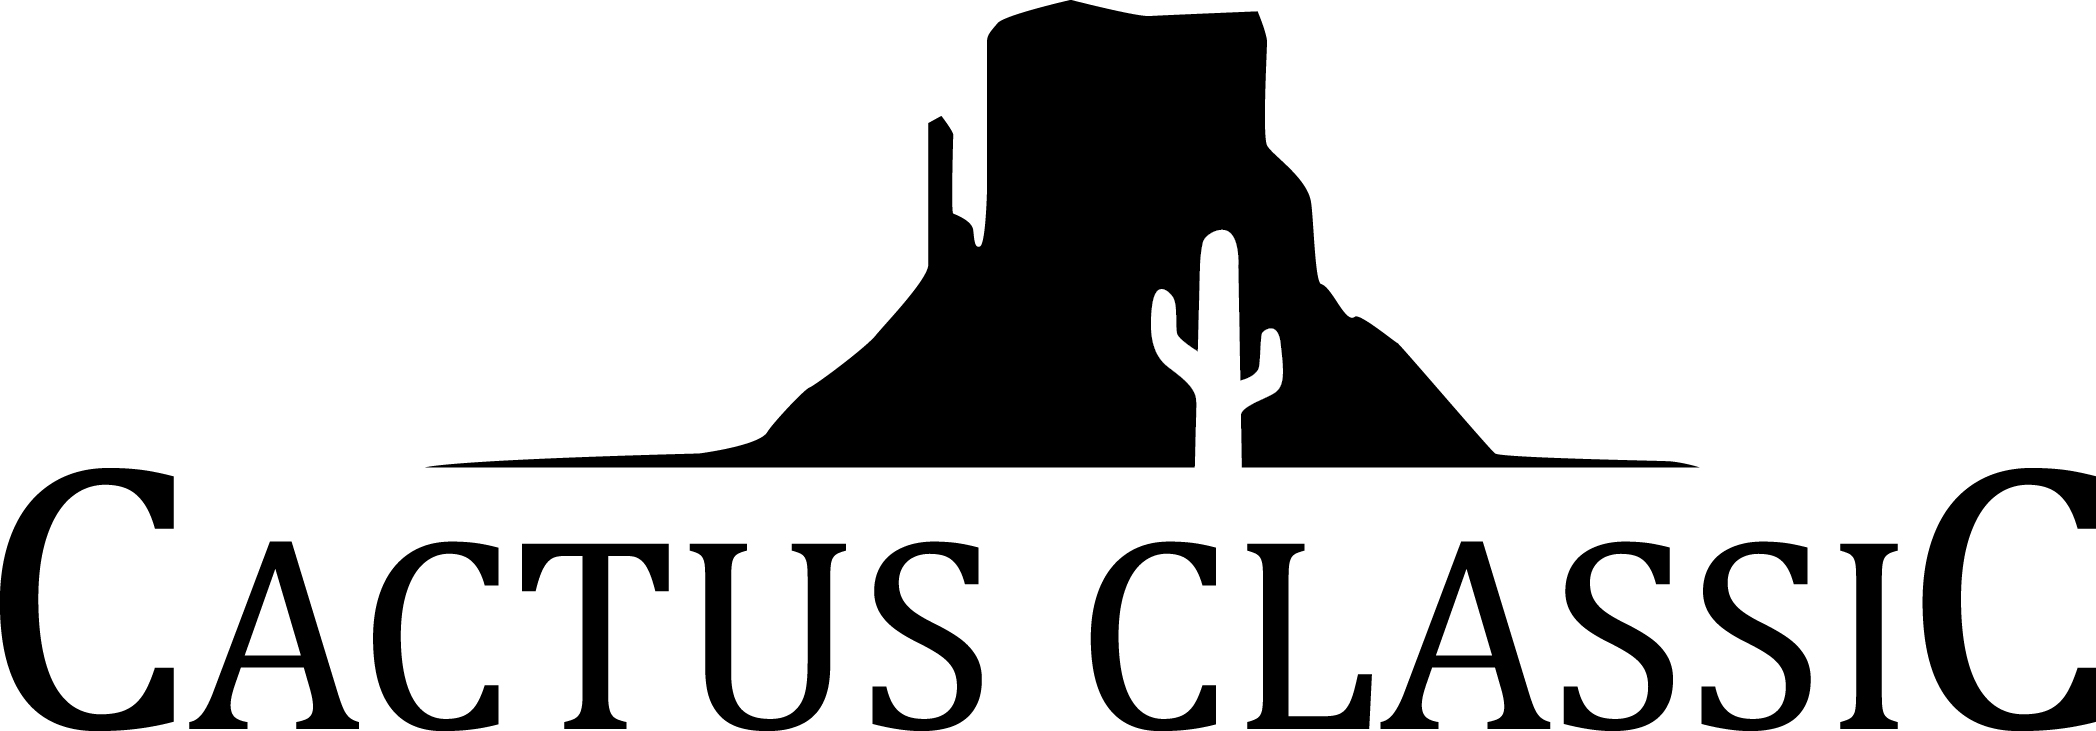 cactus-classic-logo